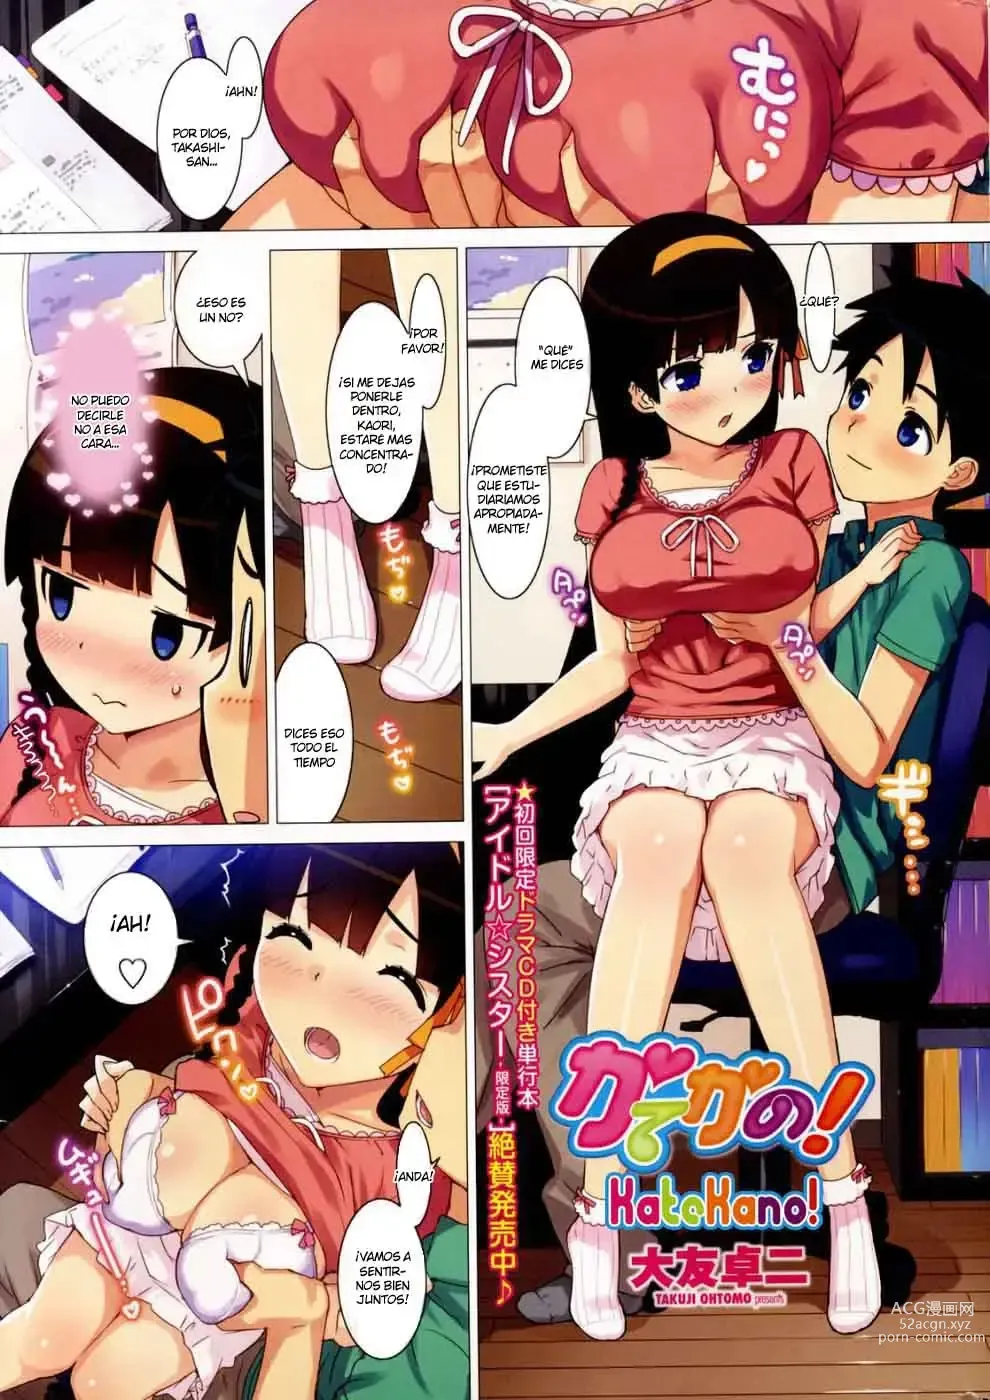 Page 4 of manga Katekano!